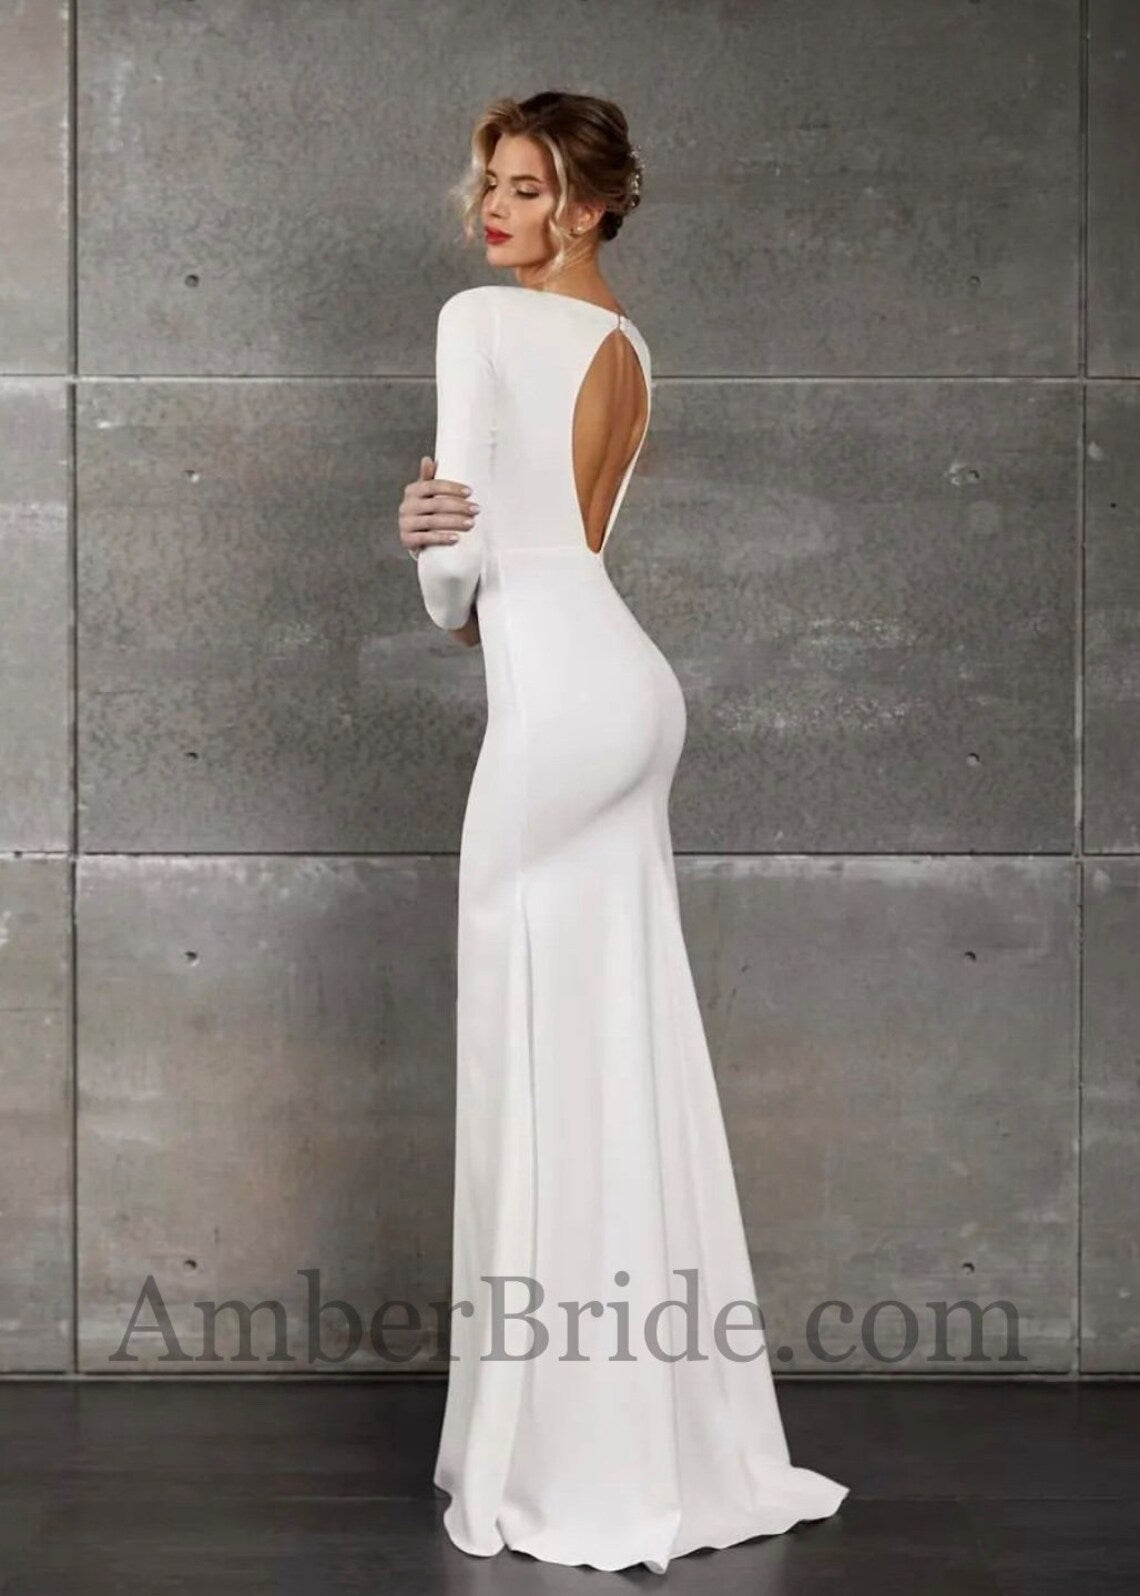 Simple Mermaid Long Sleeve Backless Crepe Wedding Dress - AmberBride